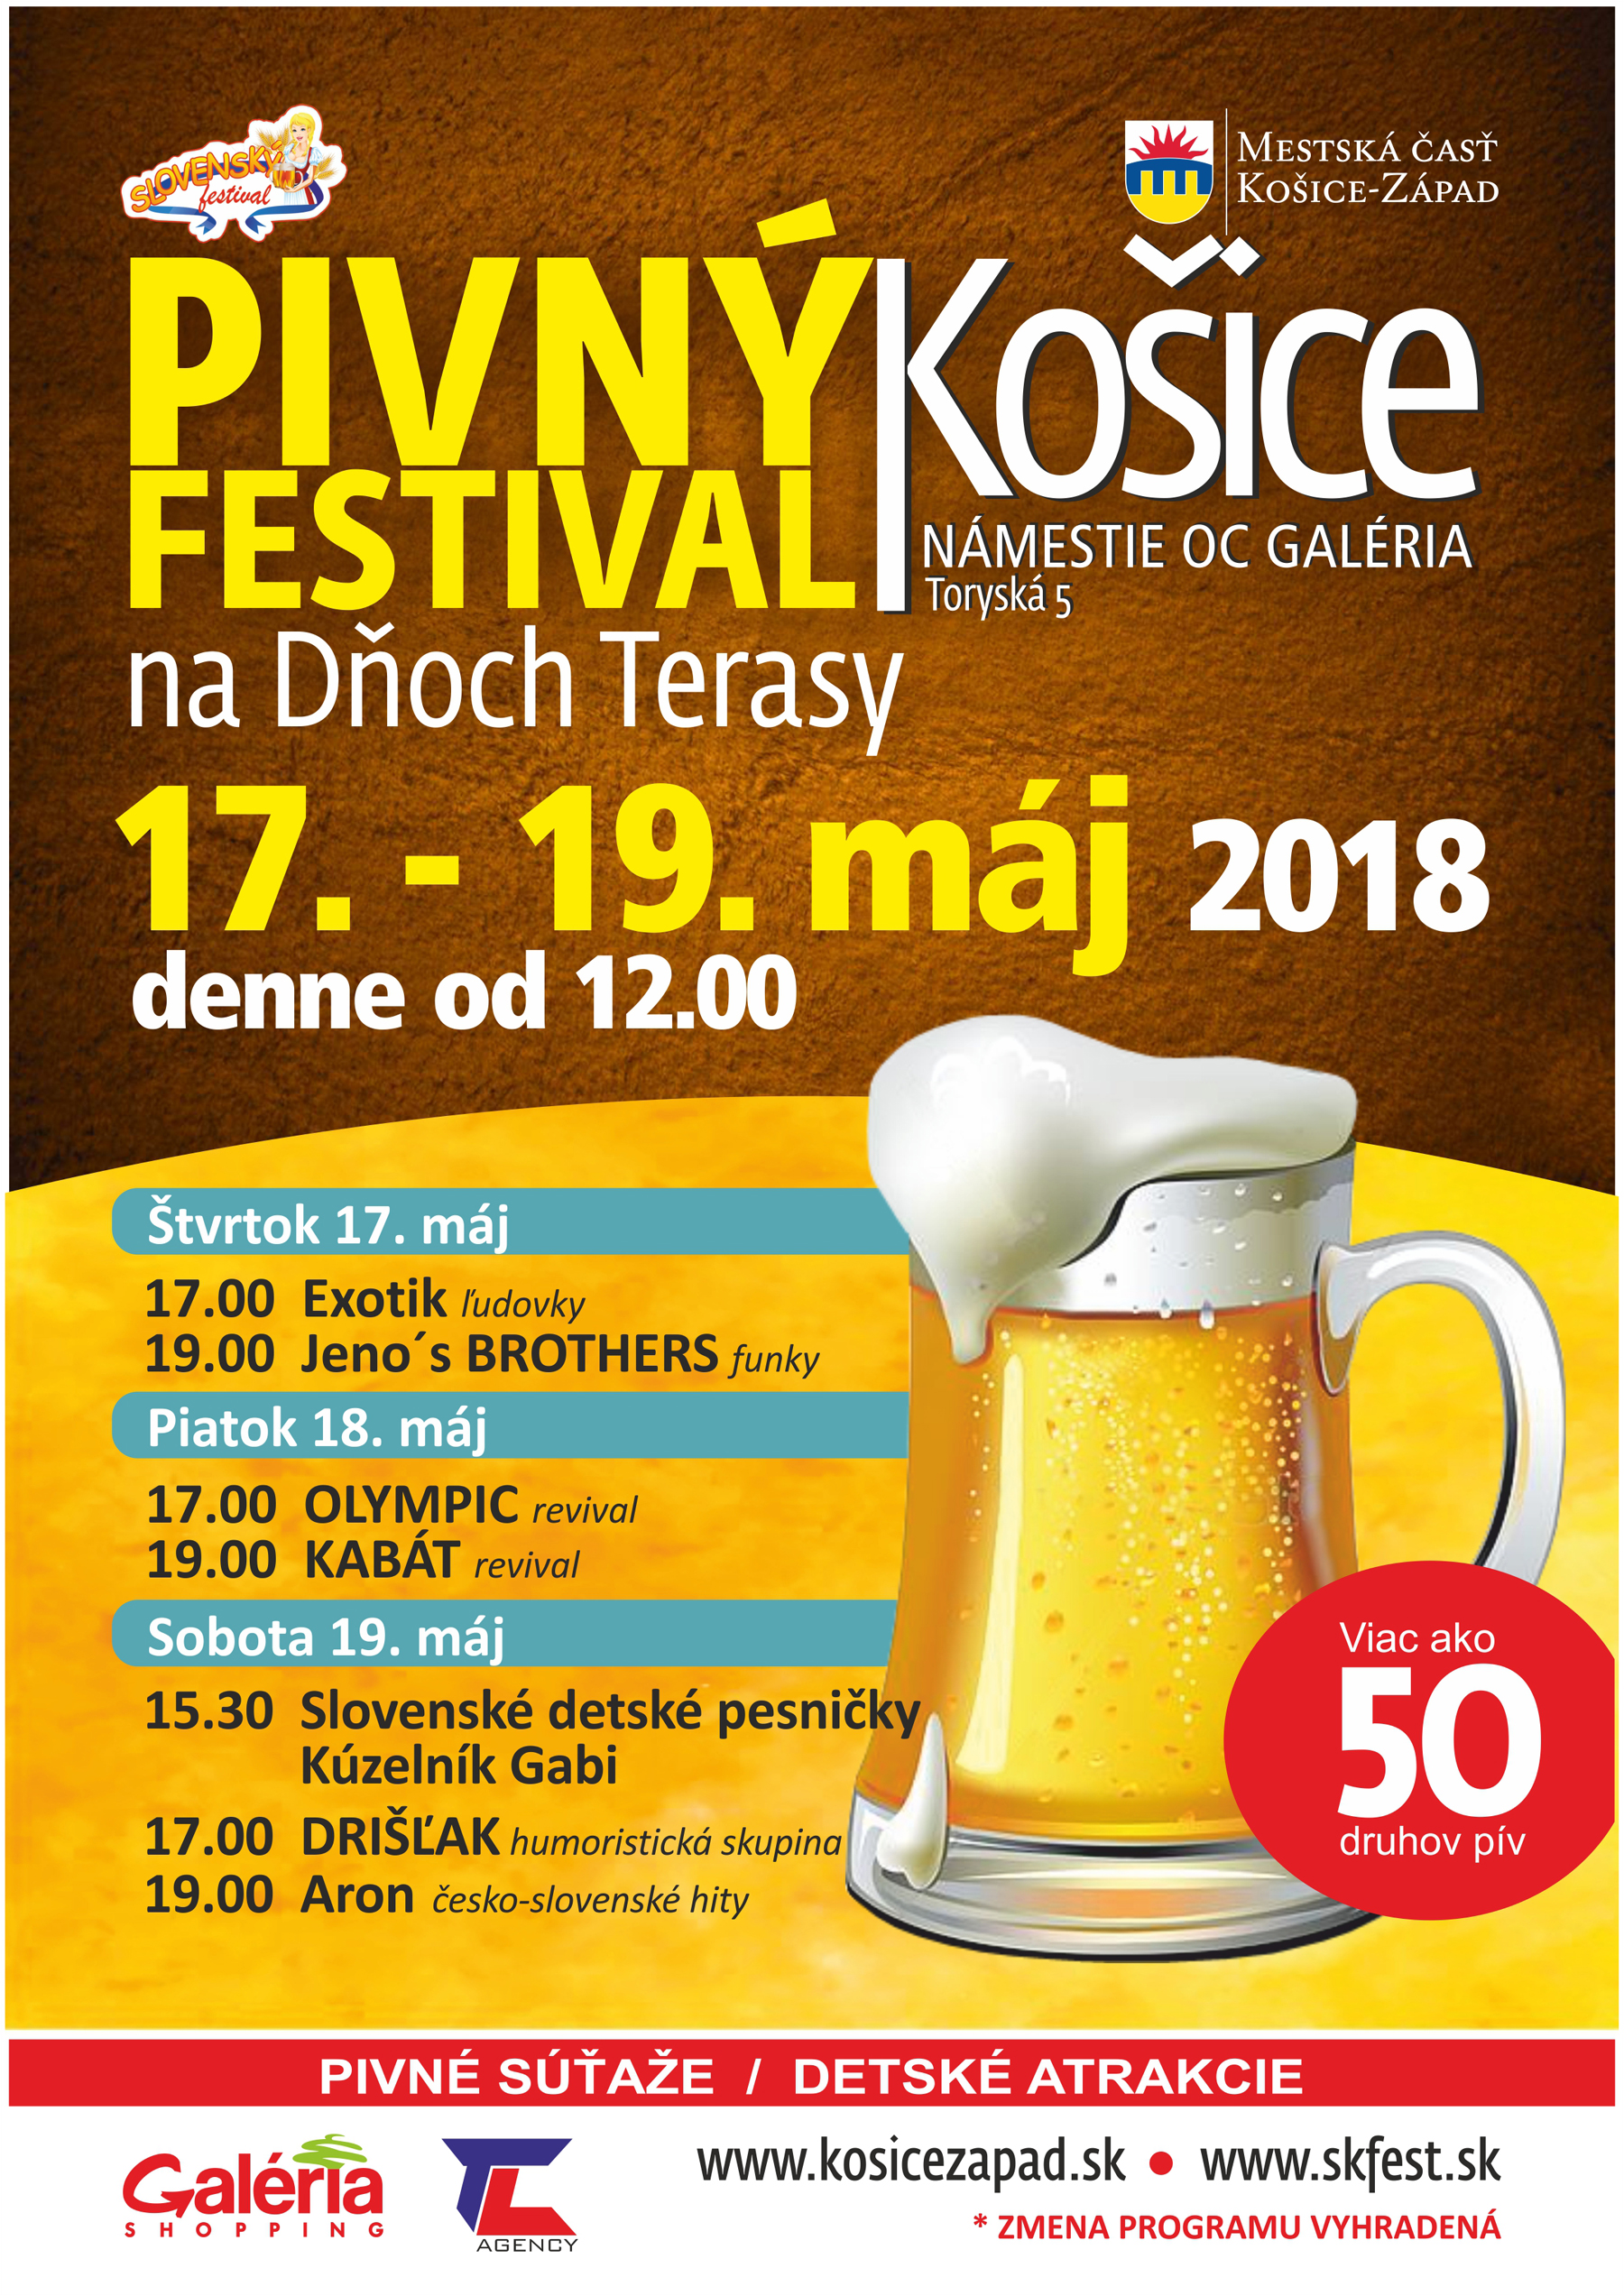 Pivn festival a Dni Terasy Koice 2018